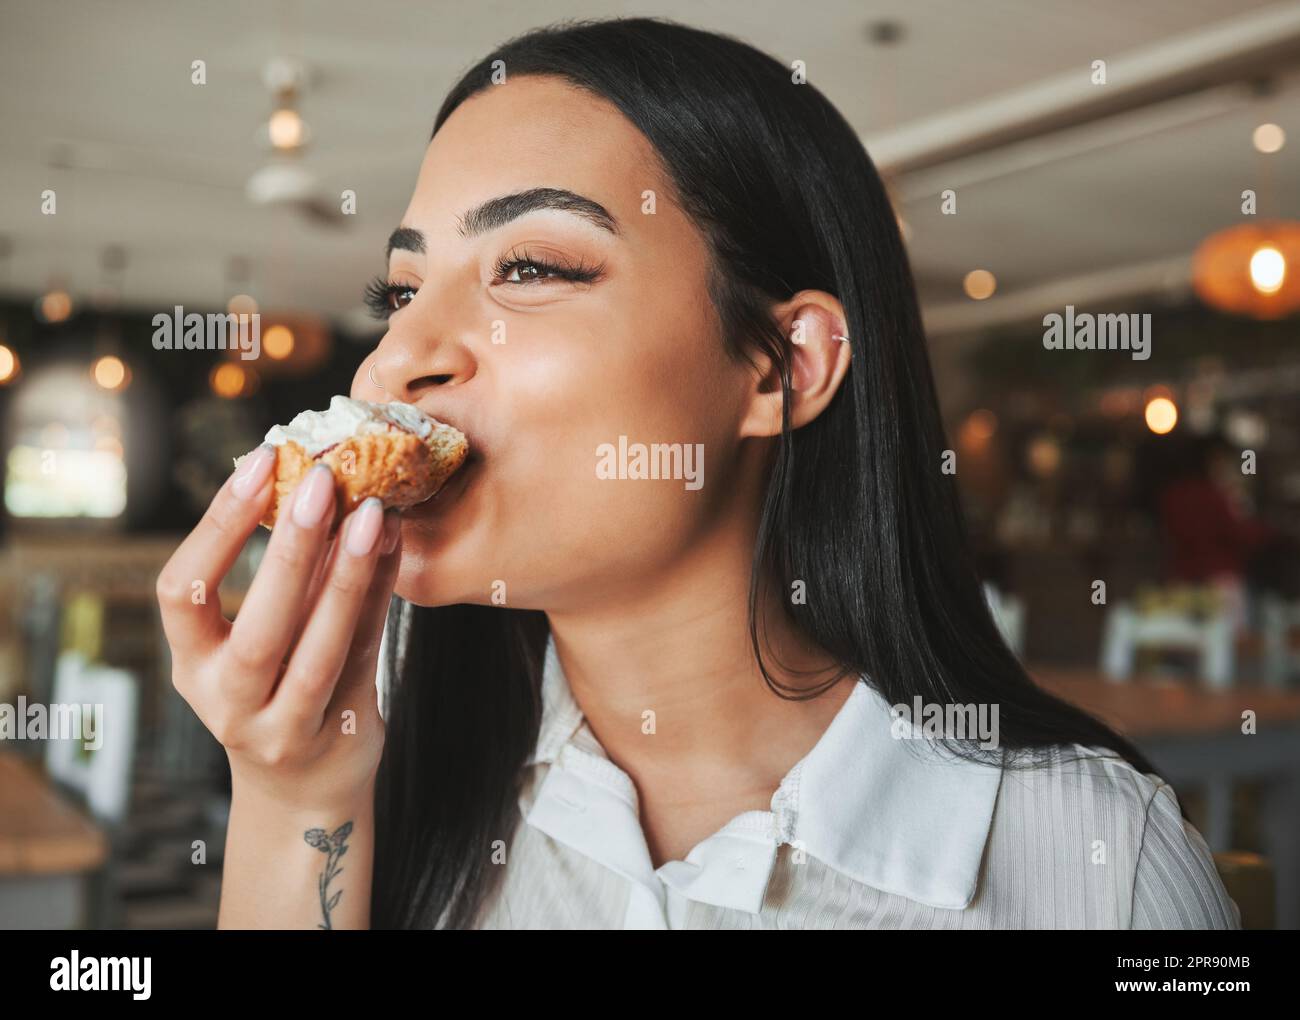 Die perfekte Zeit zum Genießen. Eine schöne junge Frau, die in einem Café zu einem leckeren Leckerbissen beißt. Stockfoto